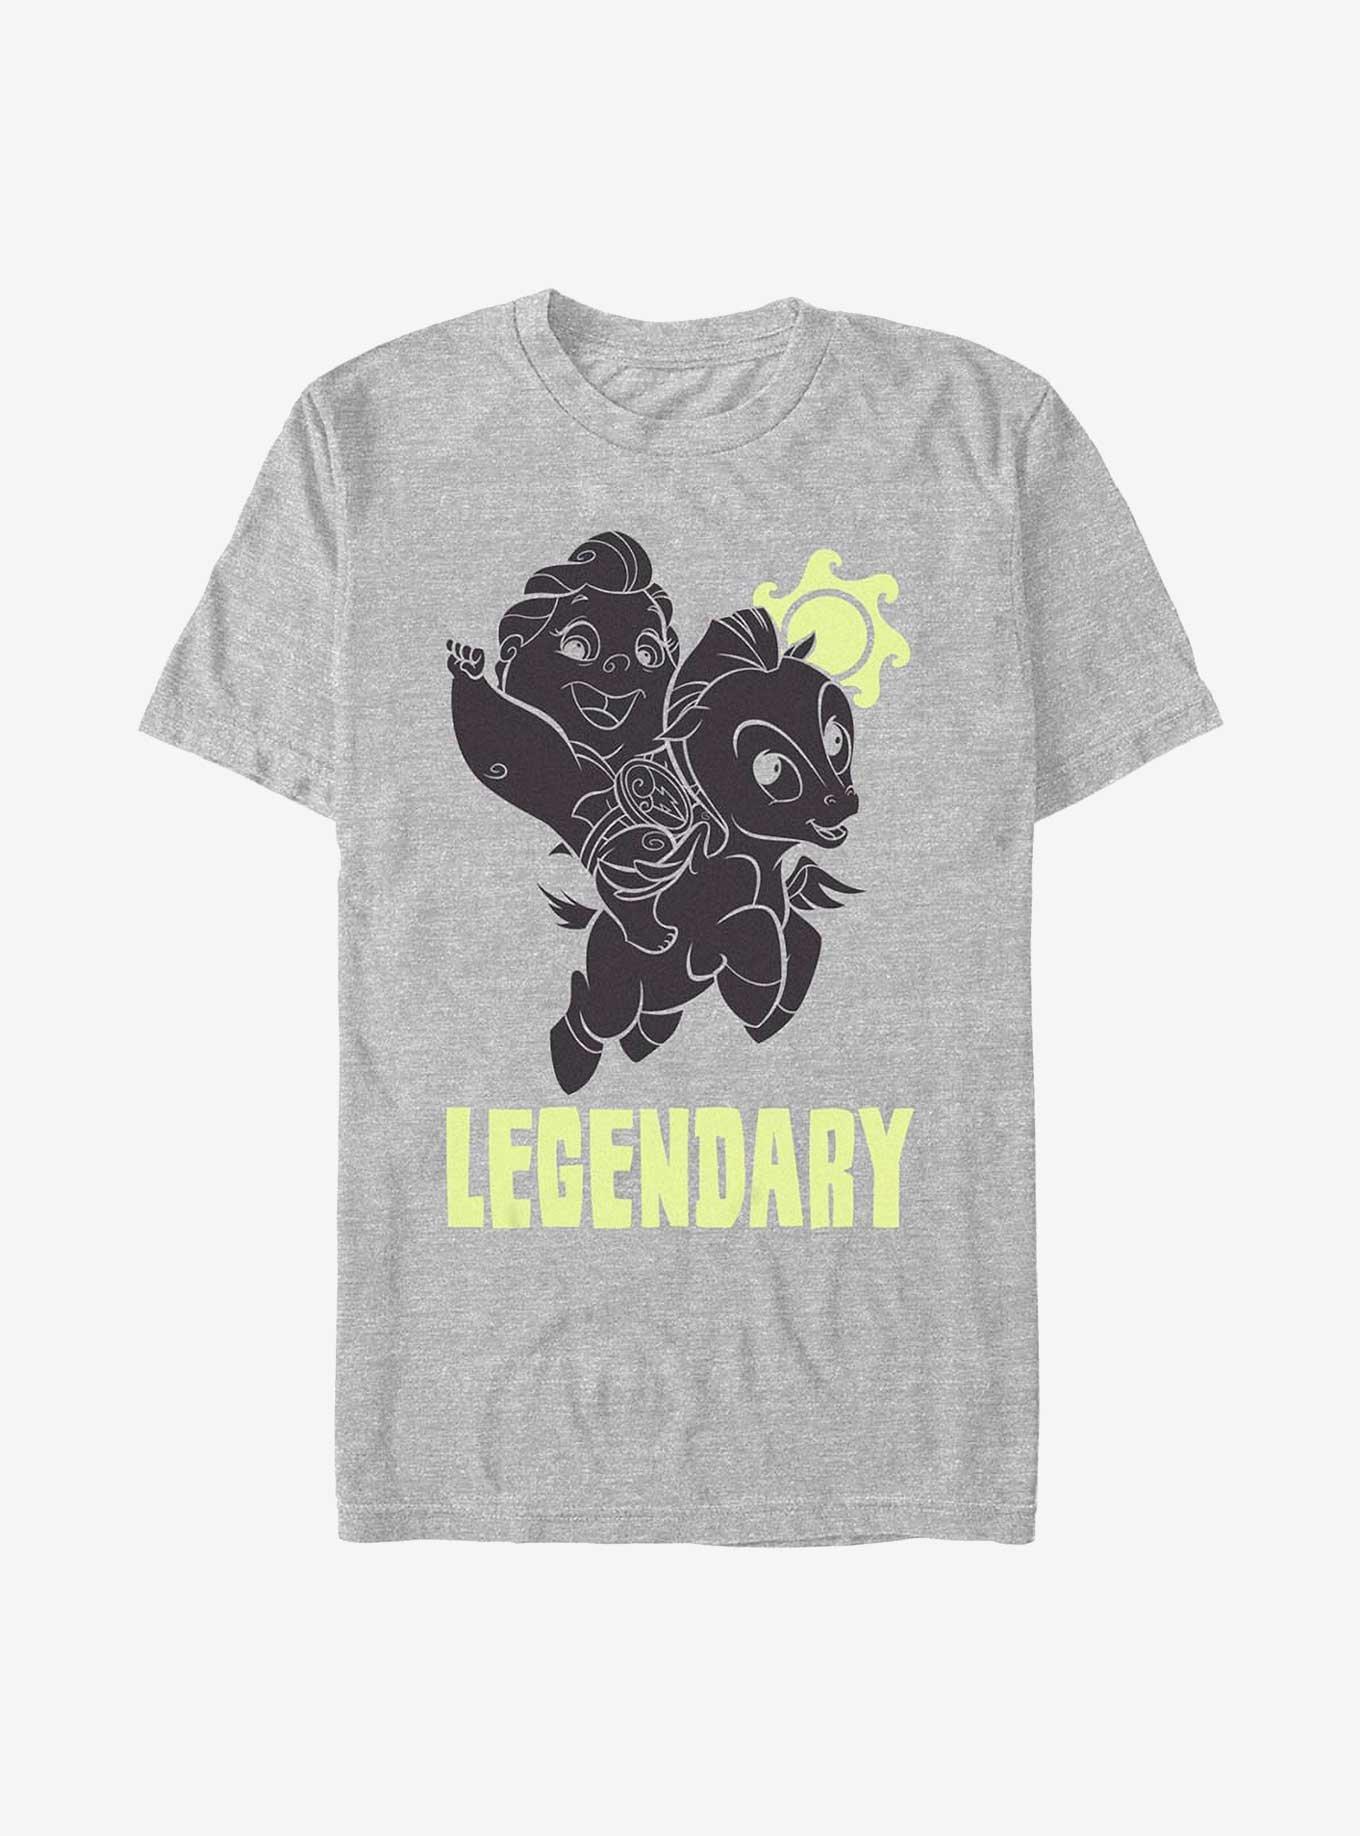 Disney Hercules Greek Legend Baby and Pegasus T-Shirt